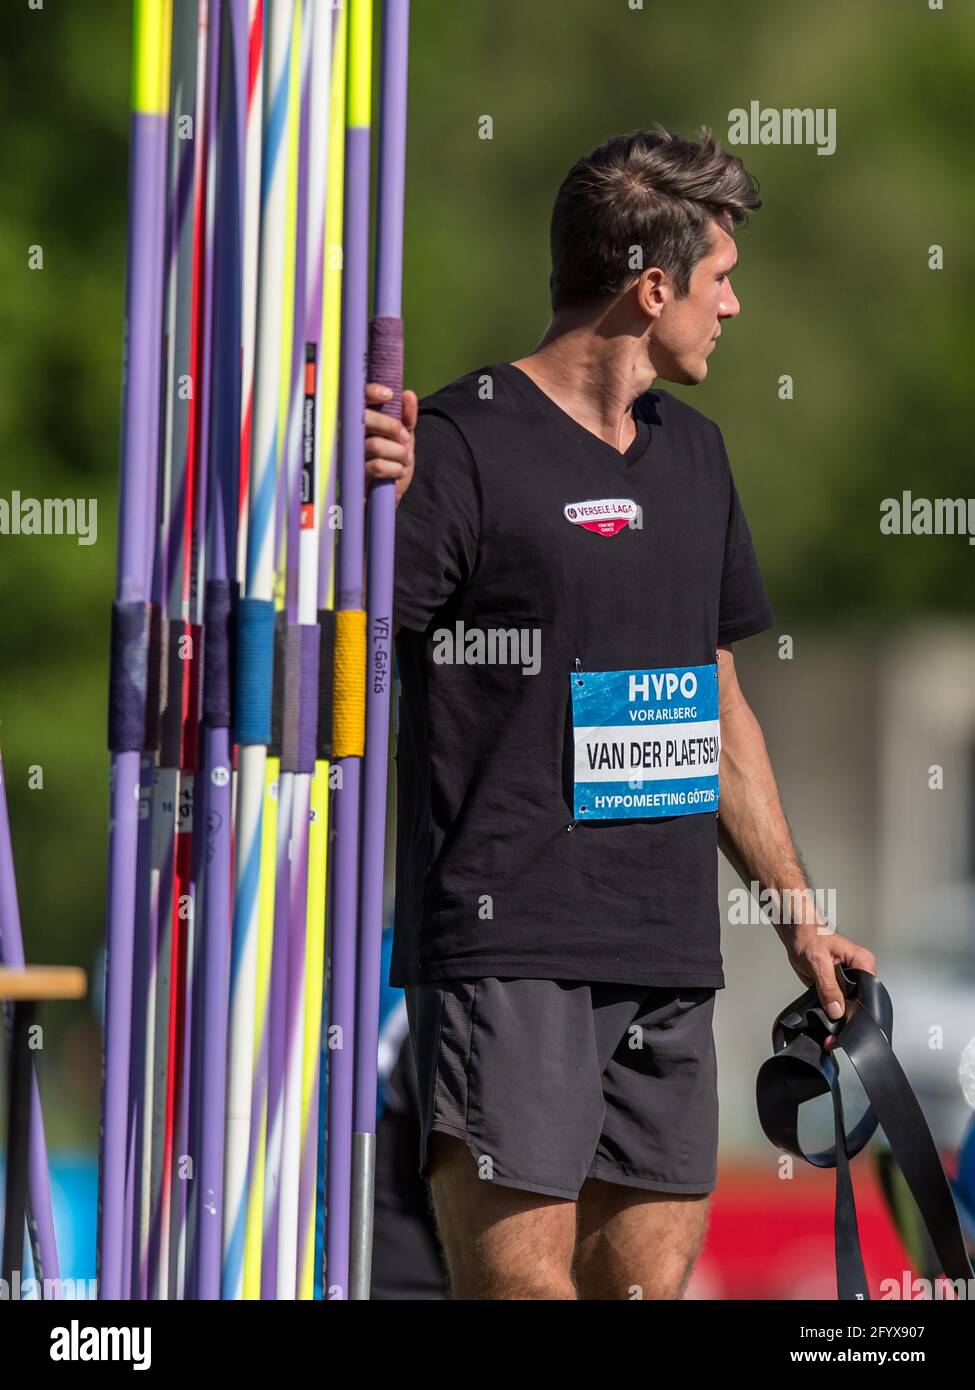 Le Belge Thomas Van Der Plaetsen photographié lors de l'événement de jet de javelin lors de l'événement de décathlon masculin le deuxième jour de la Hypo-Meeting, IAAF World Banque D'Images